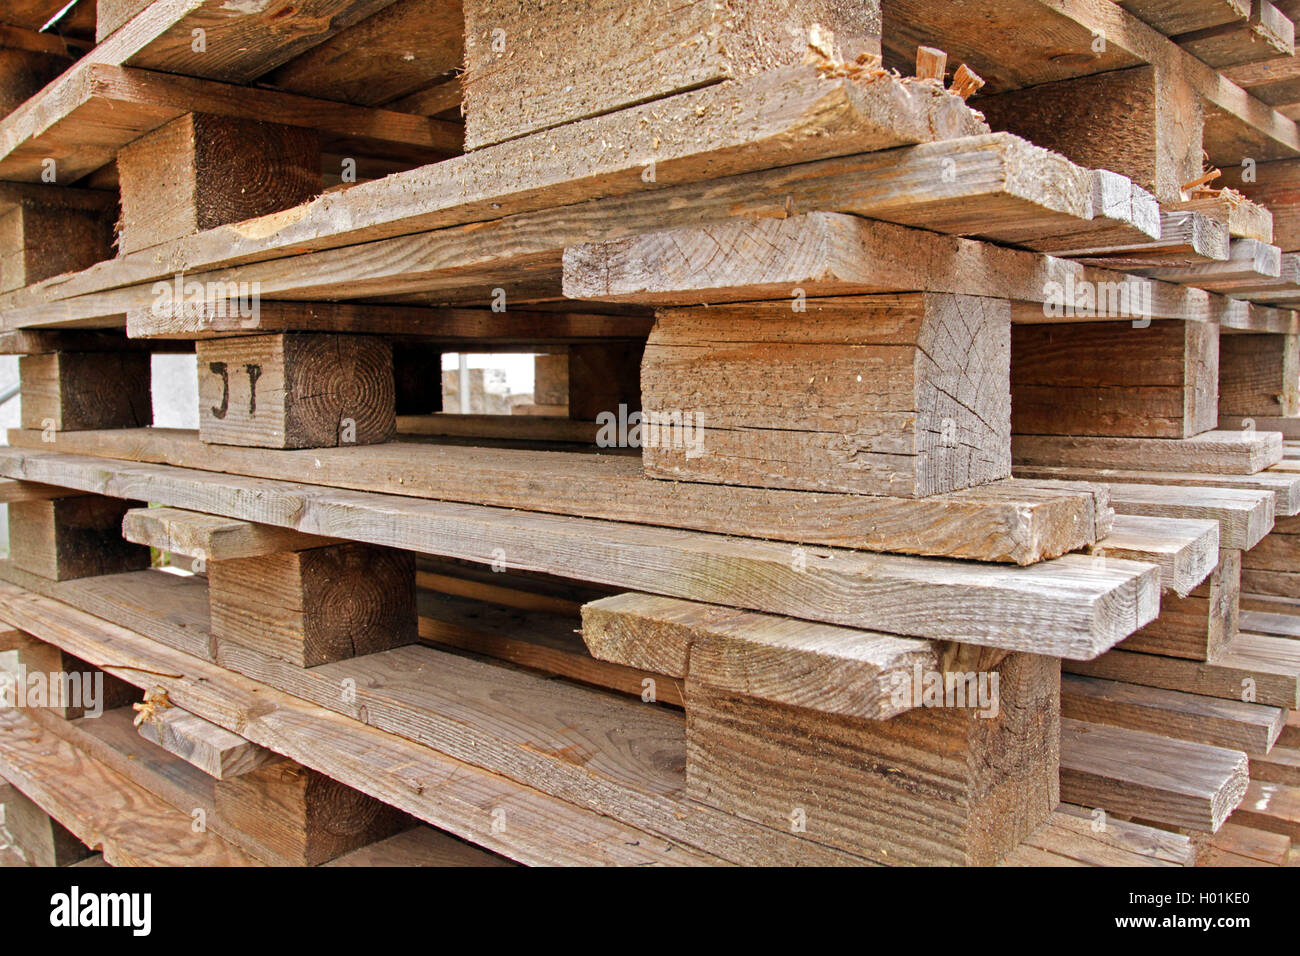 Pila de palets de madera, Alemania Foto de stock